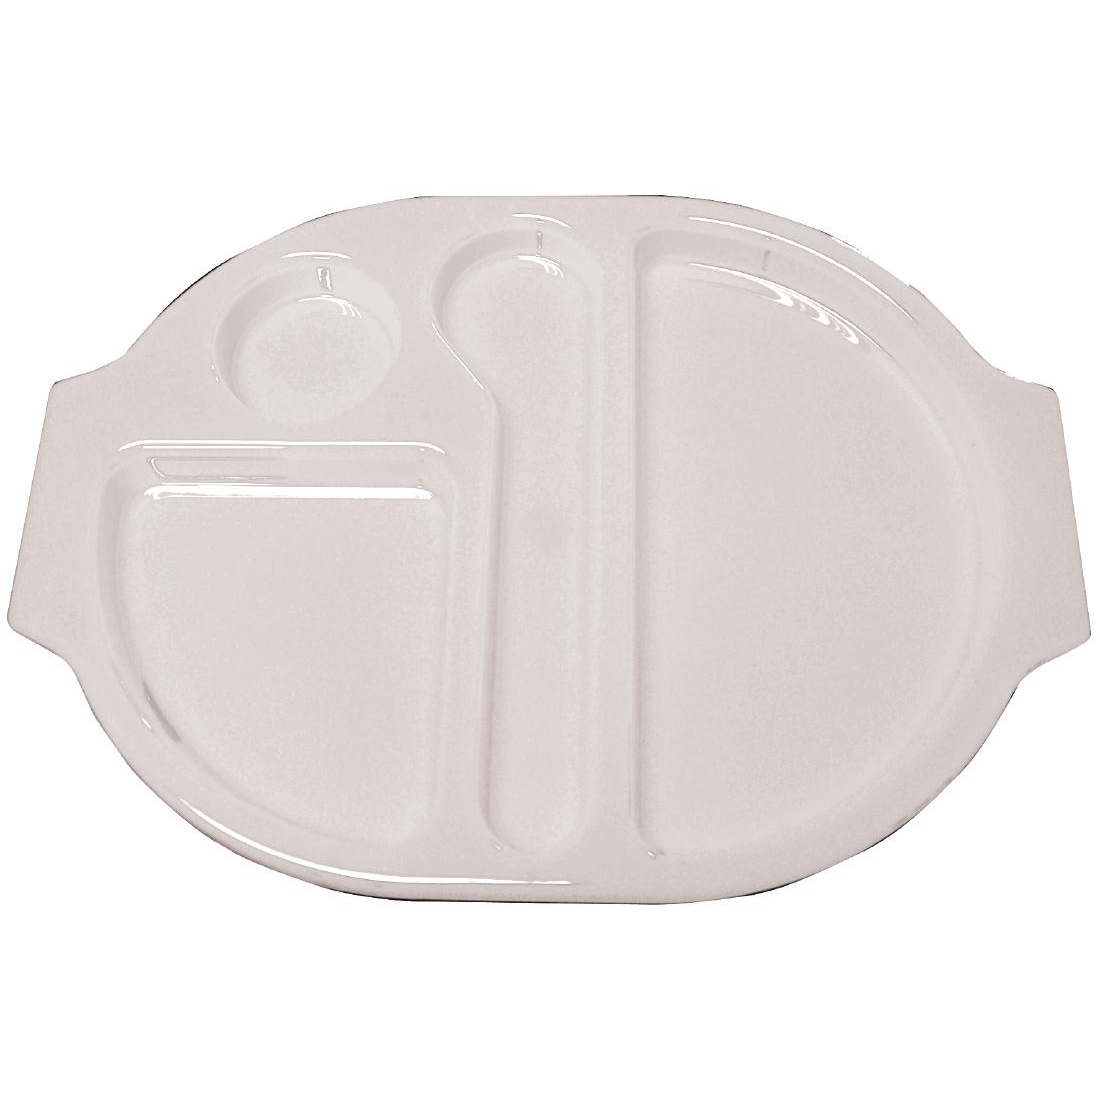 Kristallon Plastic Food Compartment Tray Small White